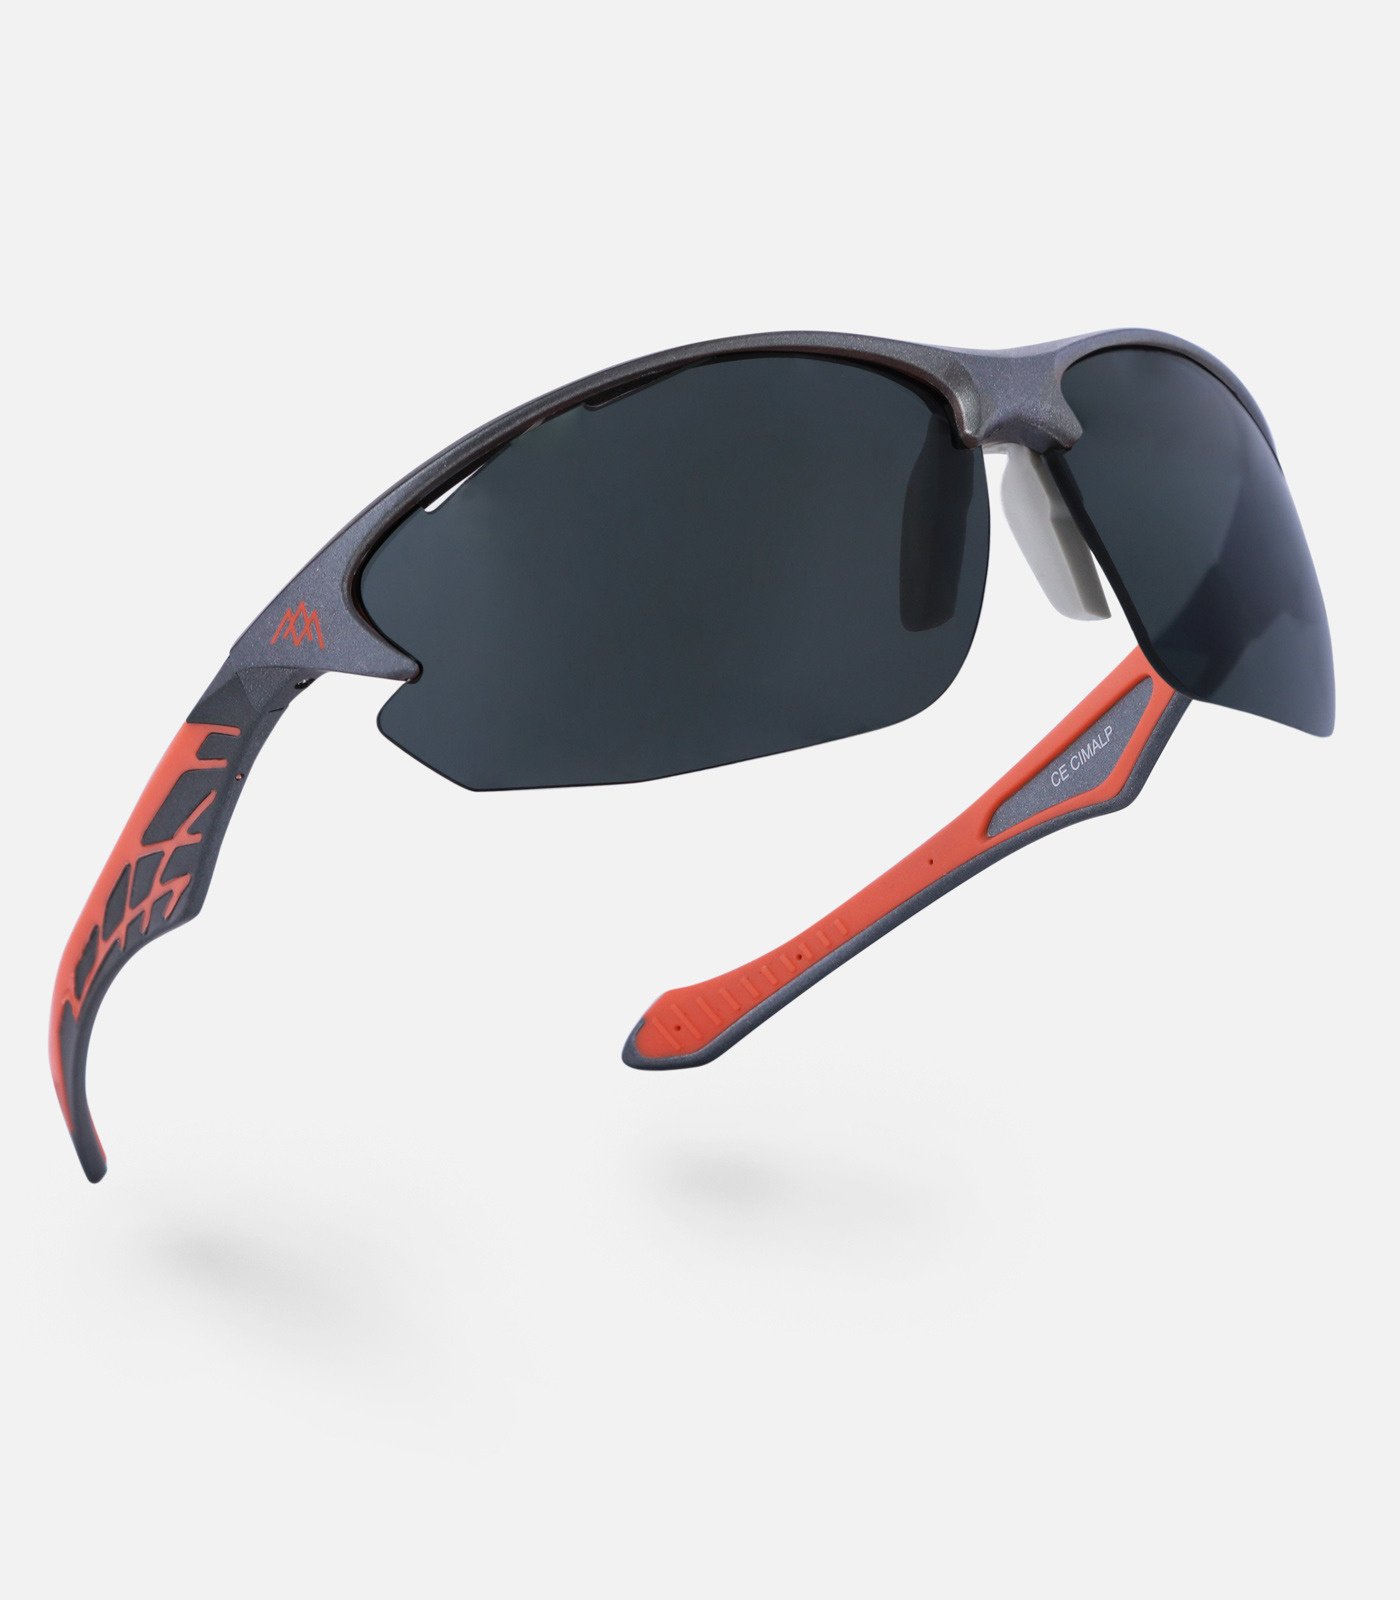 Occhiali outdoor con lenti polarizzate di categoria 3 | CIMALP®